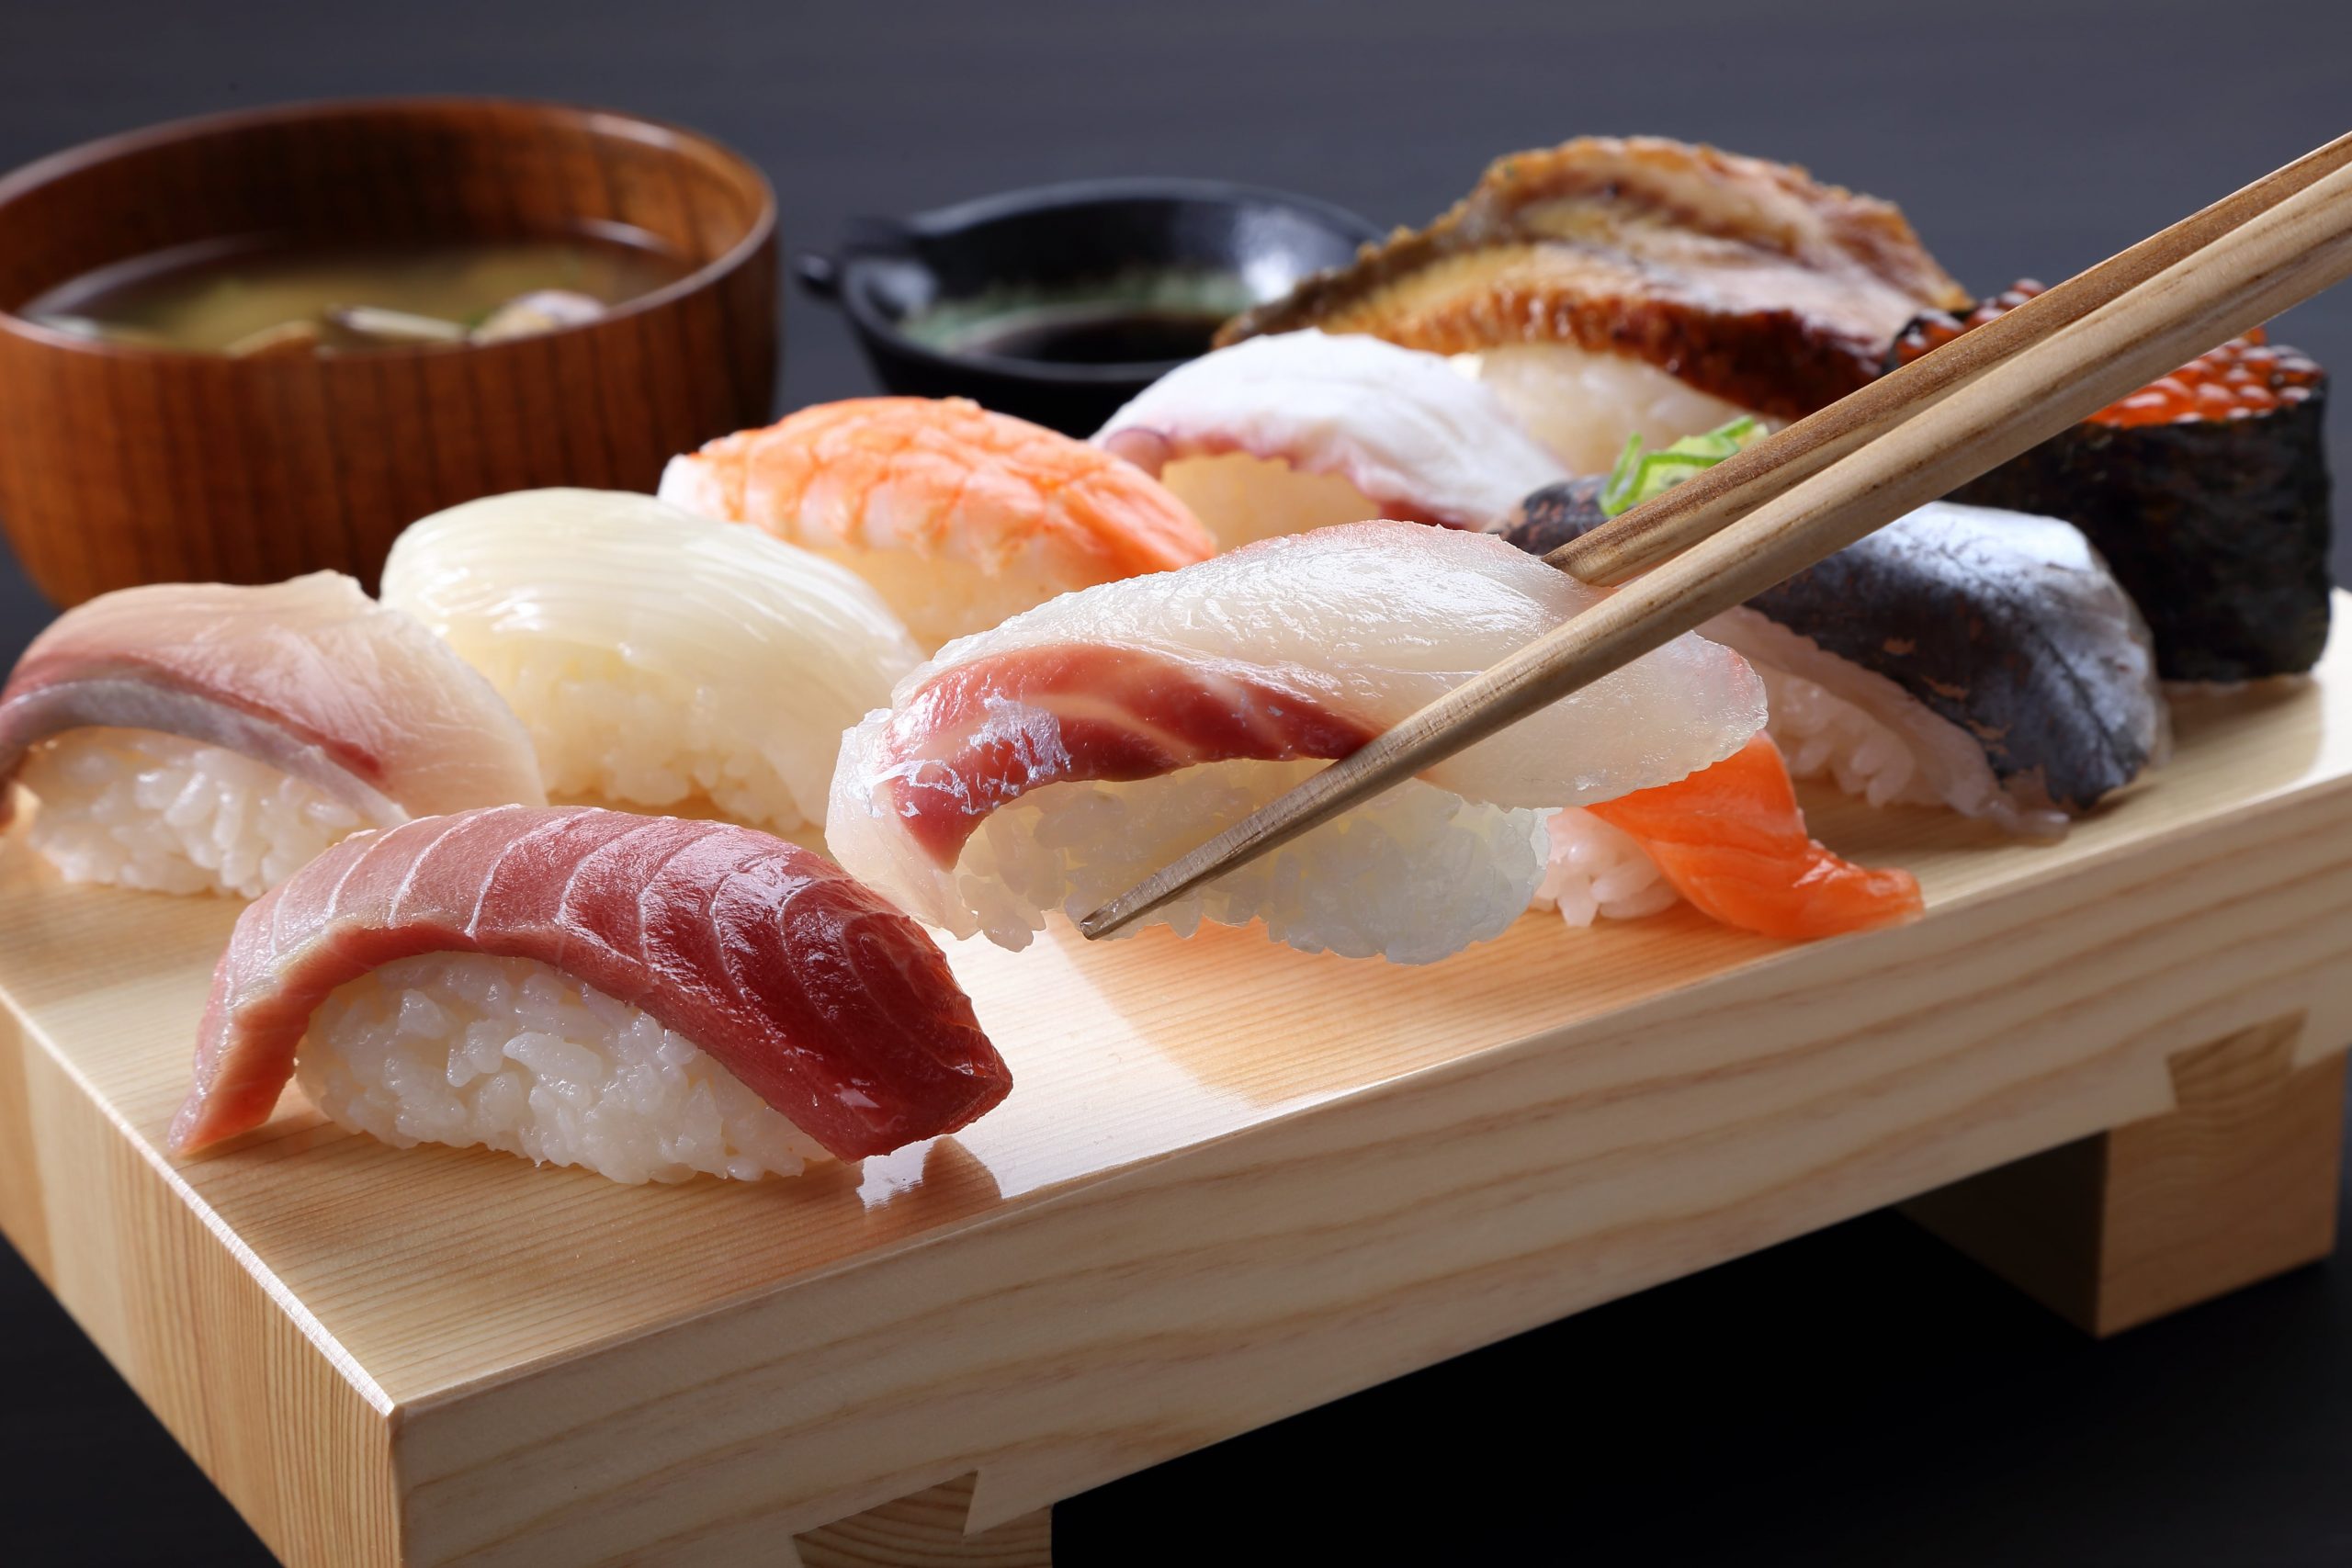 日本文化としての寿司の定義や歴史とは 寿司を食べる際の礼儀やマナーも解説 にほんご日和